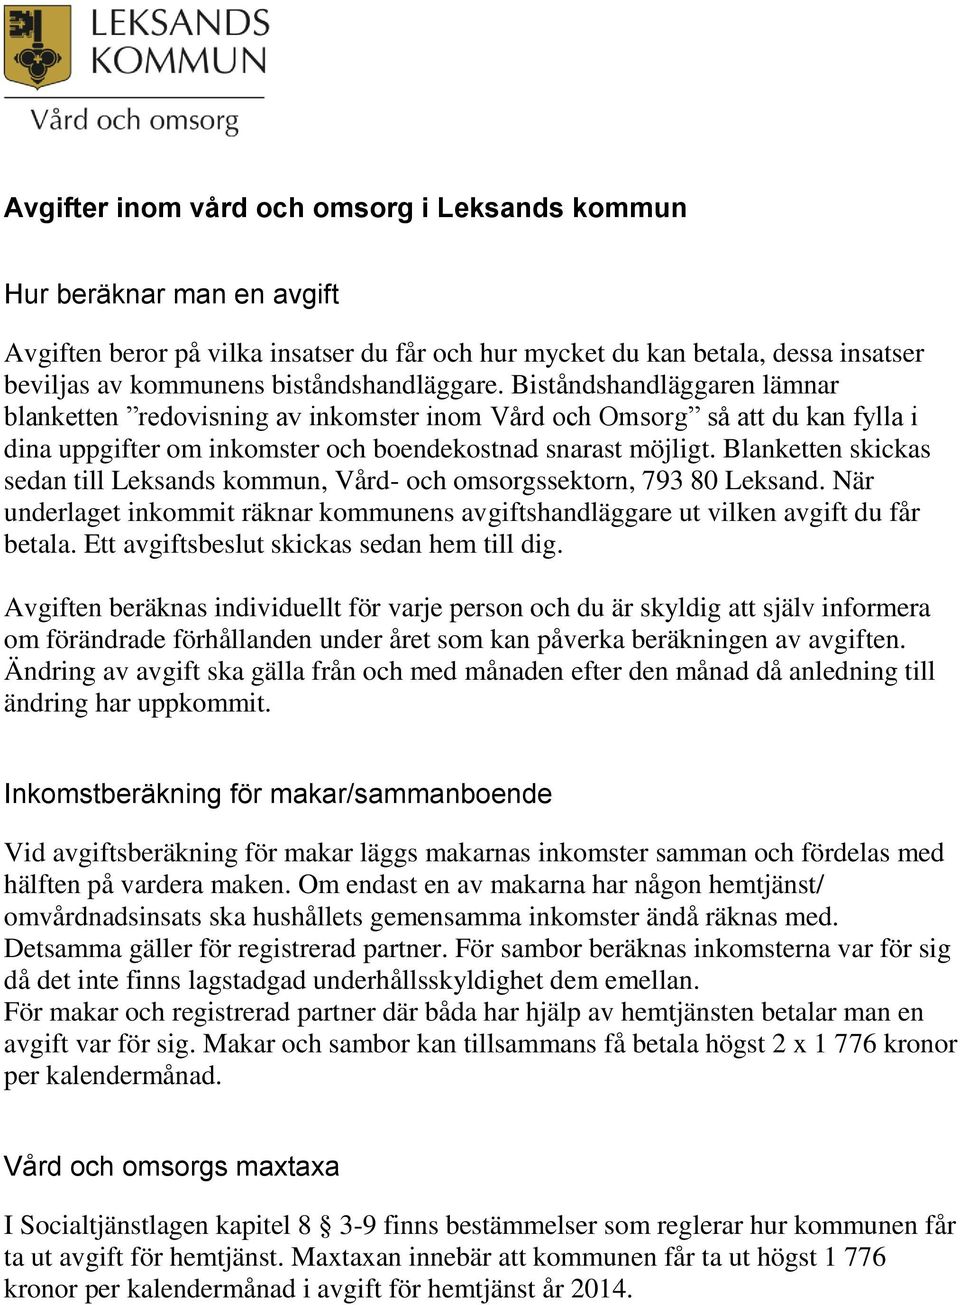 Blanketten skickas sedan till Leksands kommun, Vård- och omsorgssektorn, 793 80 Leksand. När underlaget inkommit räknar kommunens avgiftshandläggare ut vilken avgift du får betala.